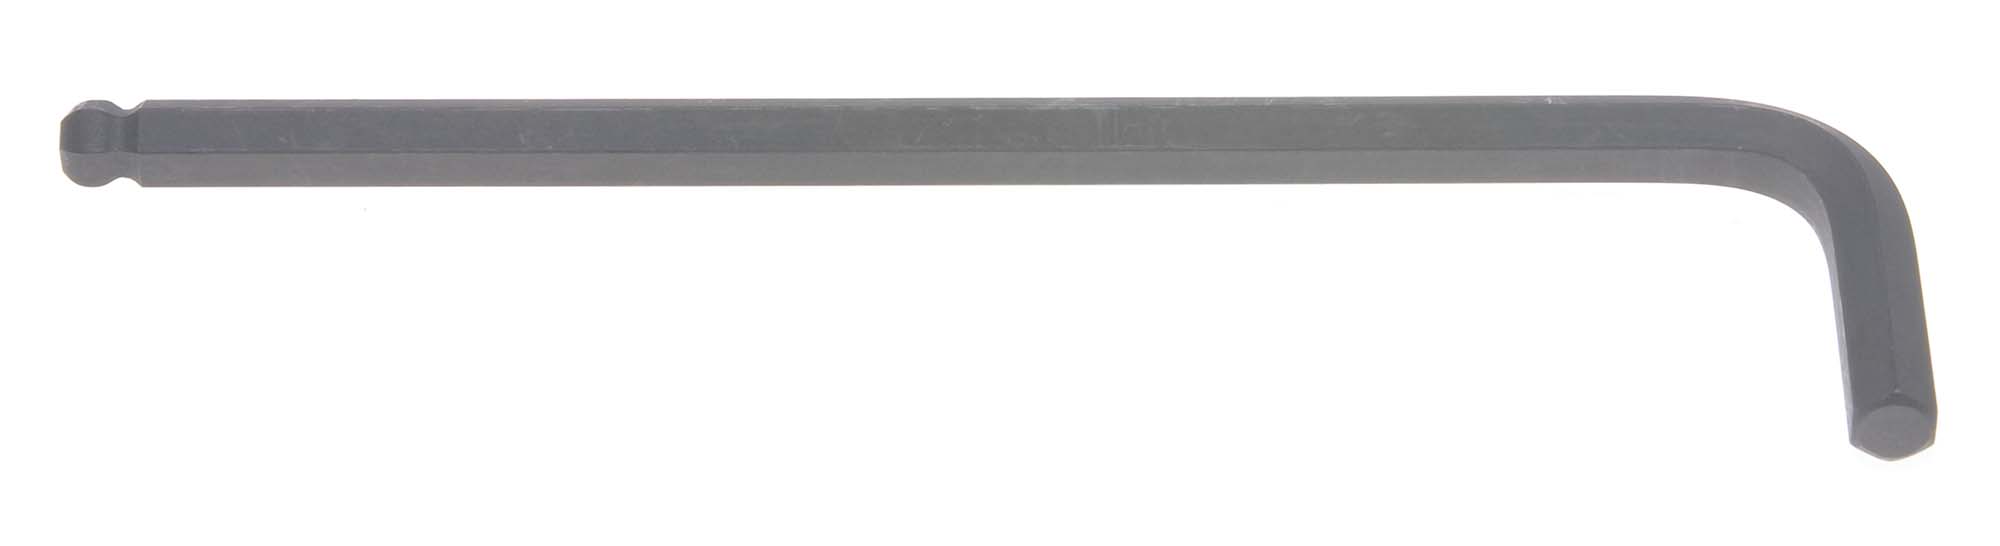 1.5mm Bondhus Balldriver L-Wrench Hex Key Hex Key